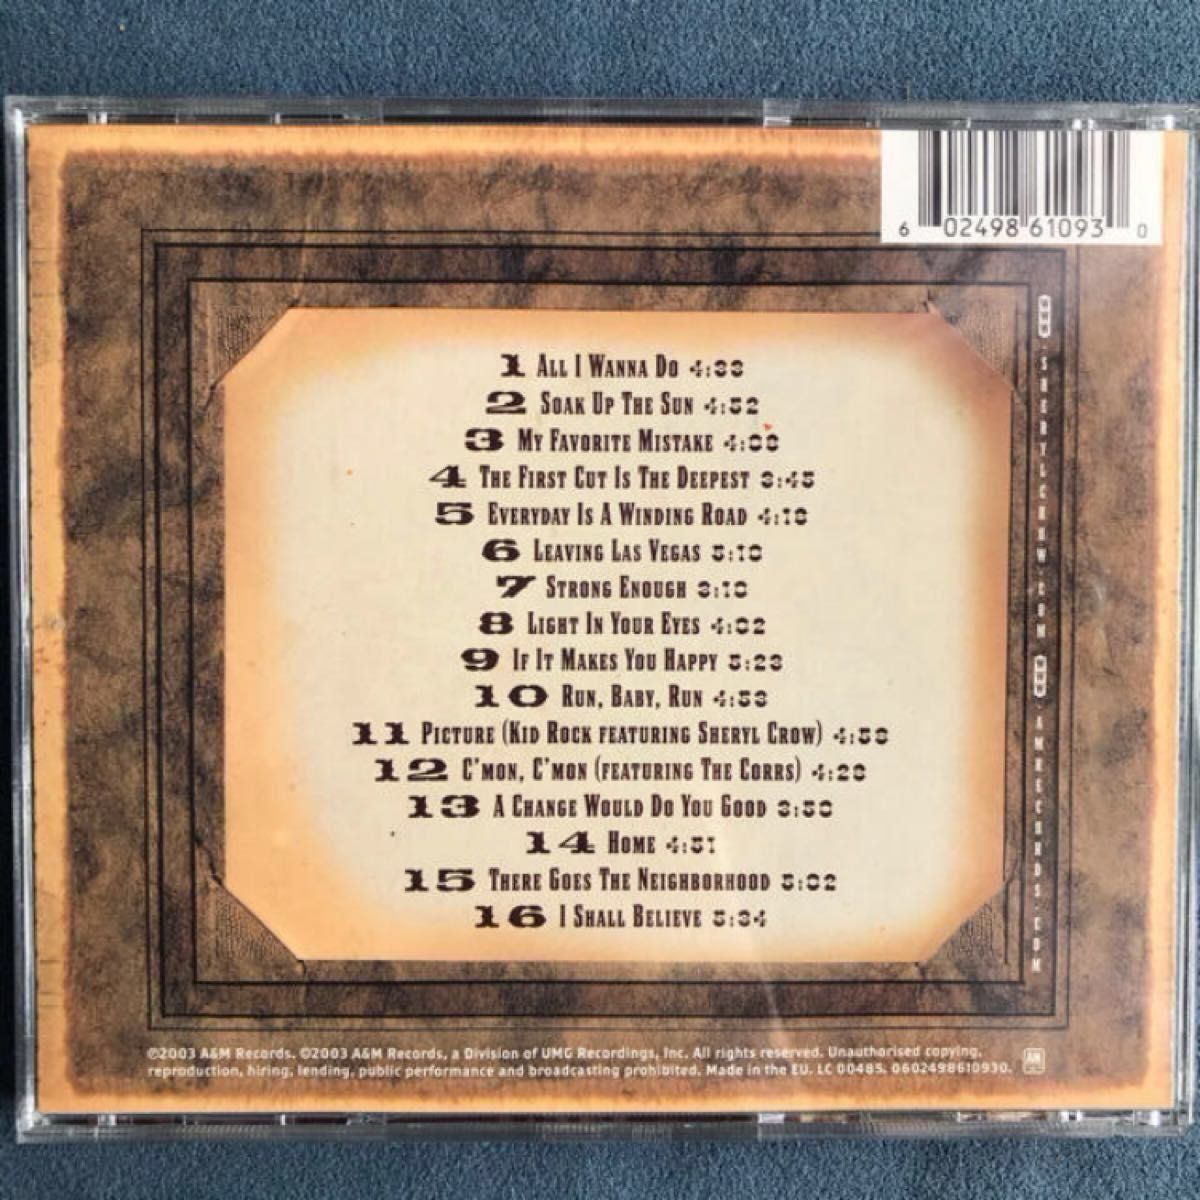 洋楽2枚/シェリル・クロウ「ザ・ヴェリー・ベスト&グローブ・セッションズ・スペシャルエディション2CD」